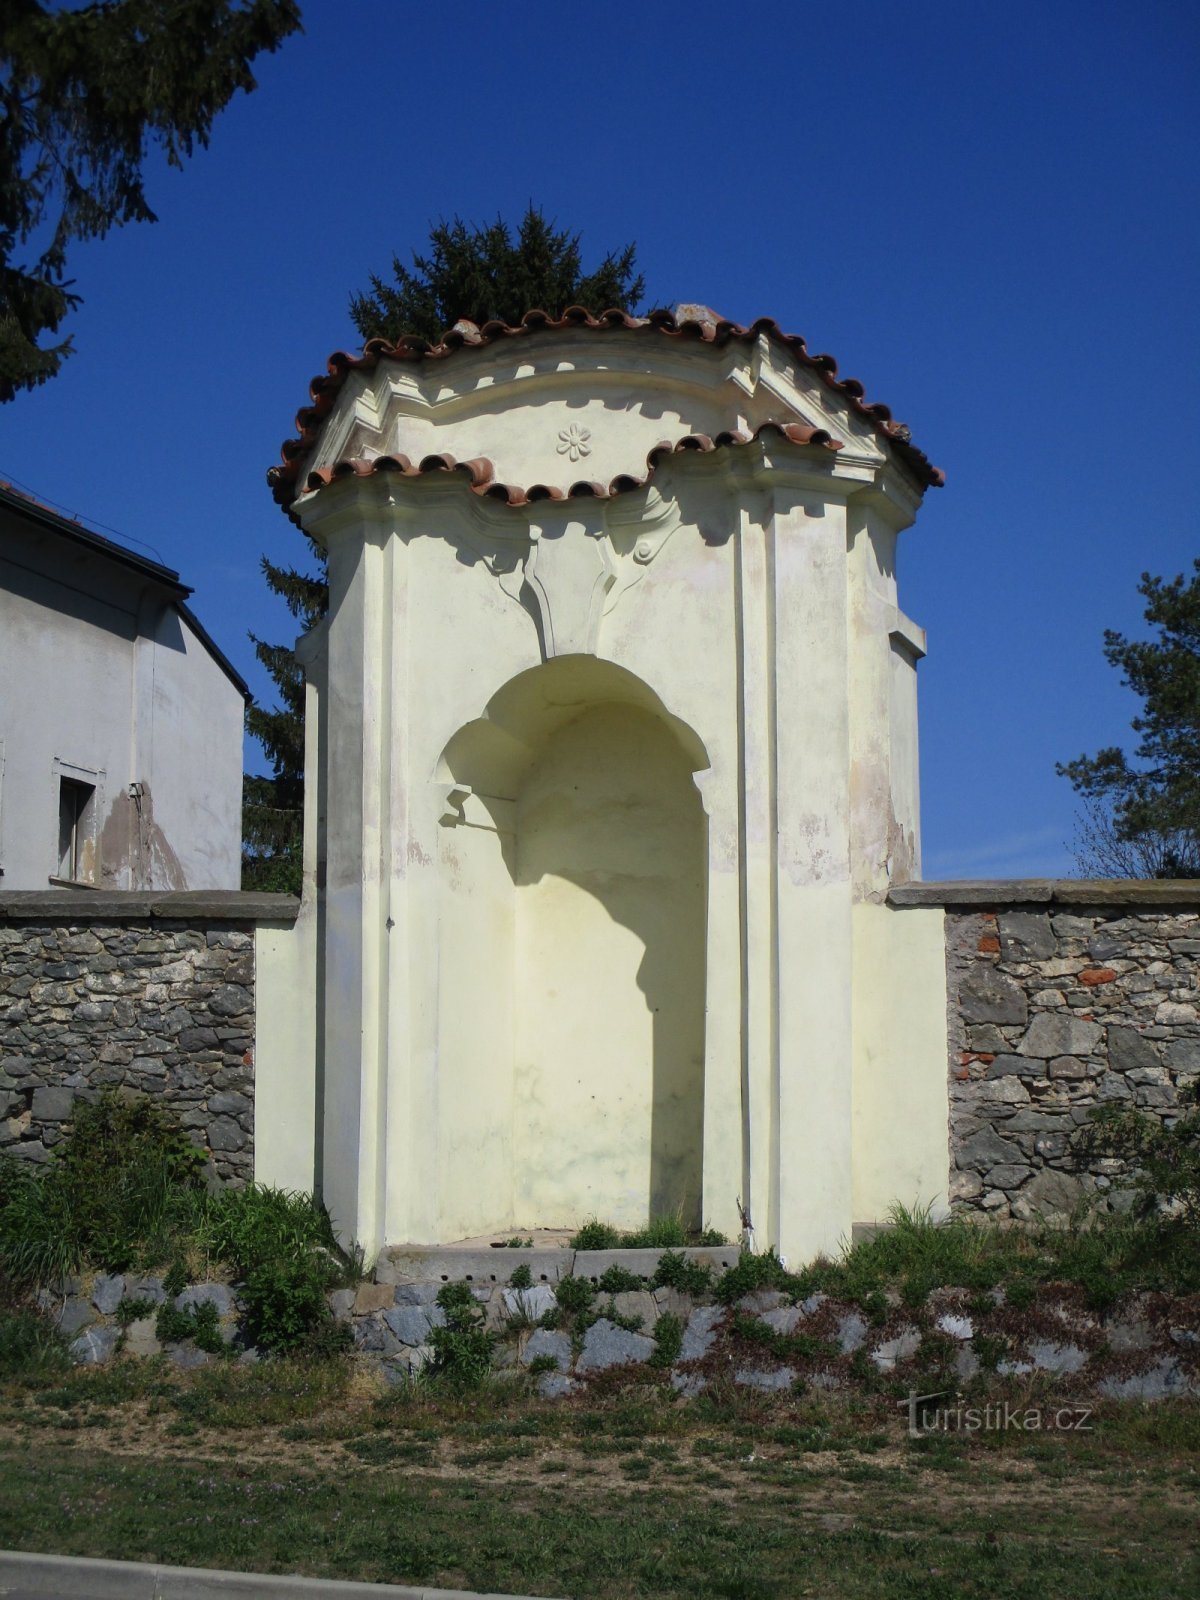 Capilla hornacina en el muro parroquial (Osice, 18.4.2020/XNUMX/XNUMX)